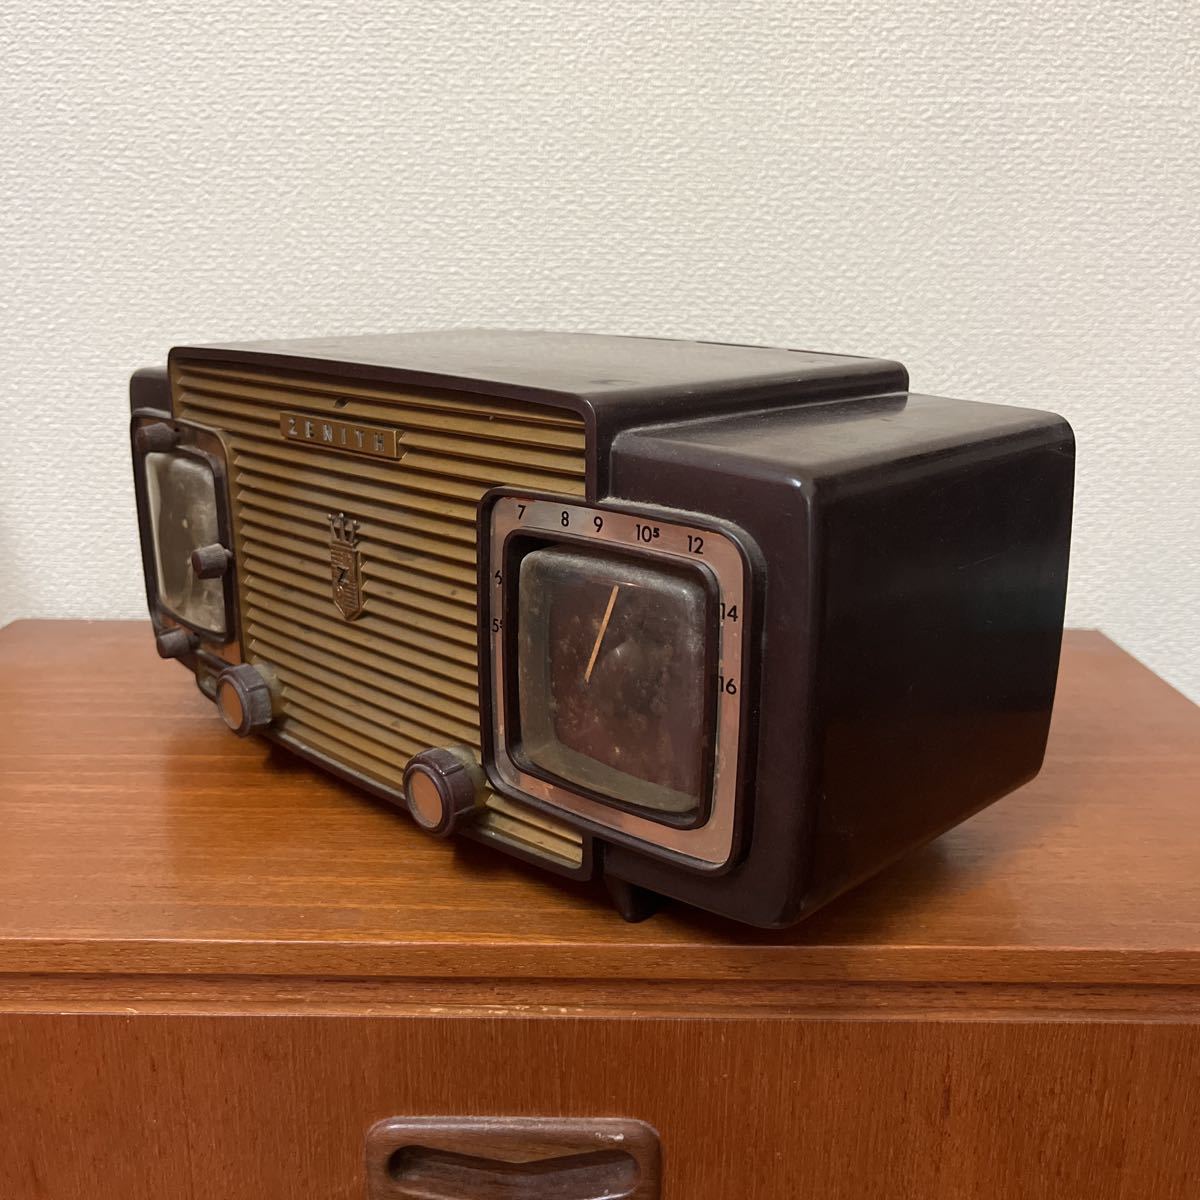 50-60s ZENITH Zenith вакуумная трубка радио model K622 магазин инвентарь Junk неподвижный товар произведение искусства дисплей Vintage античный 33×15×15.5